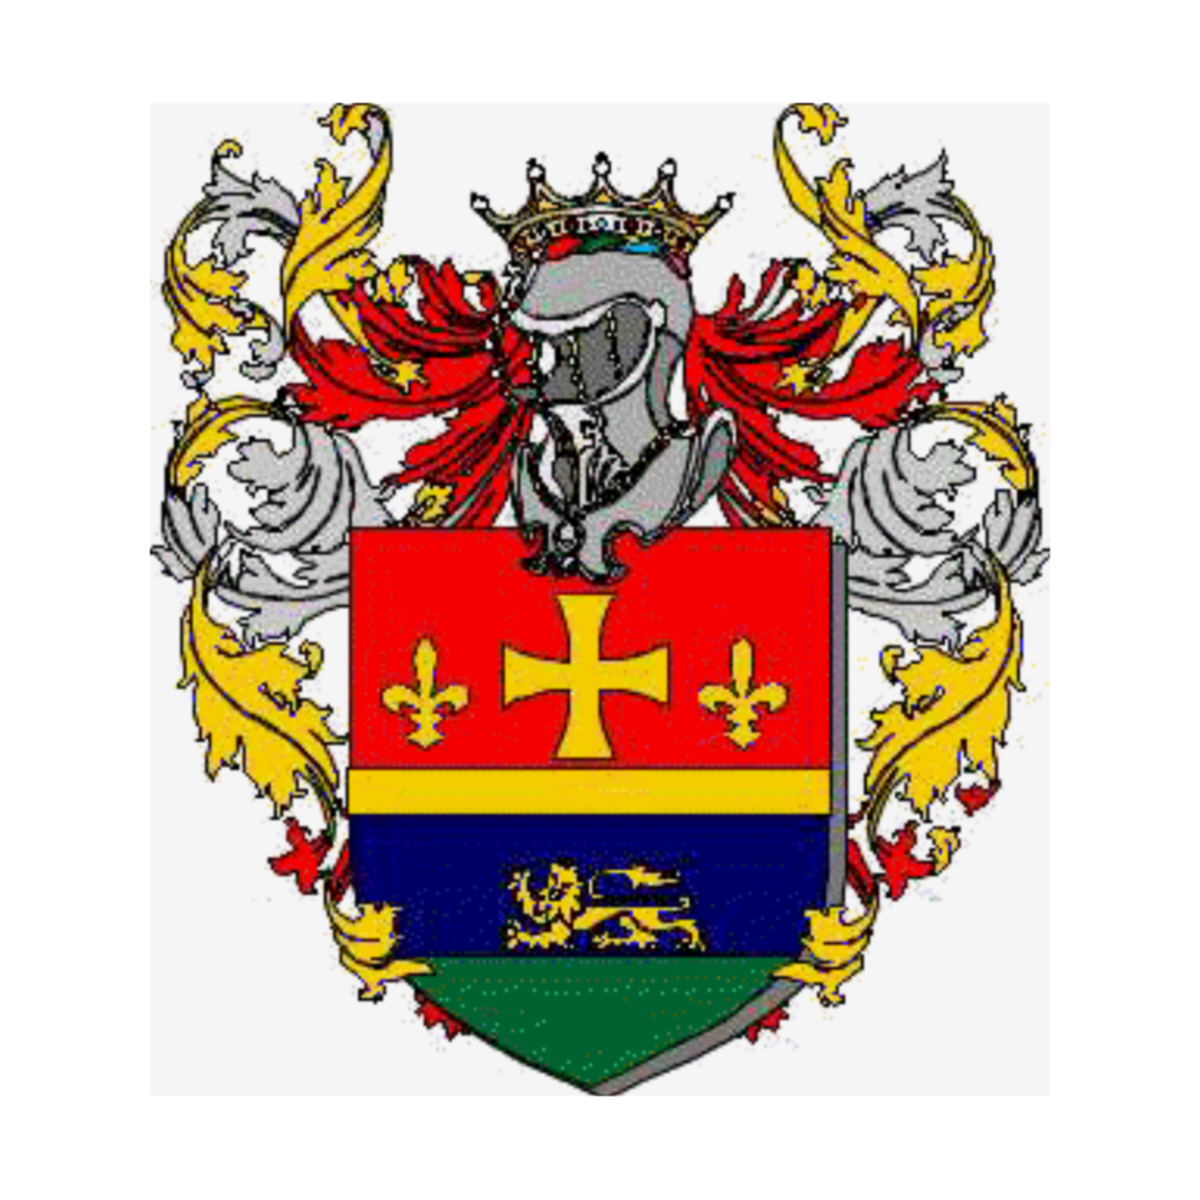 Wappen der Familie, Parisotto,Partisotti